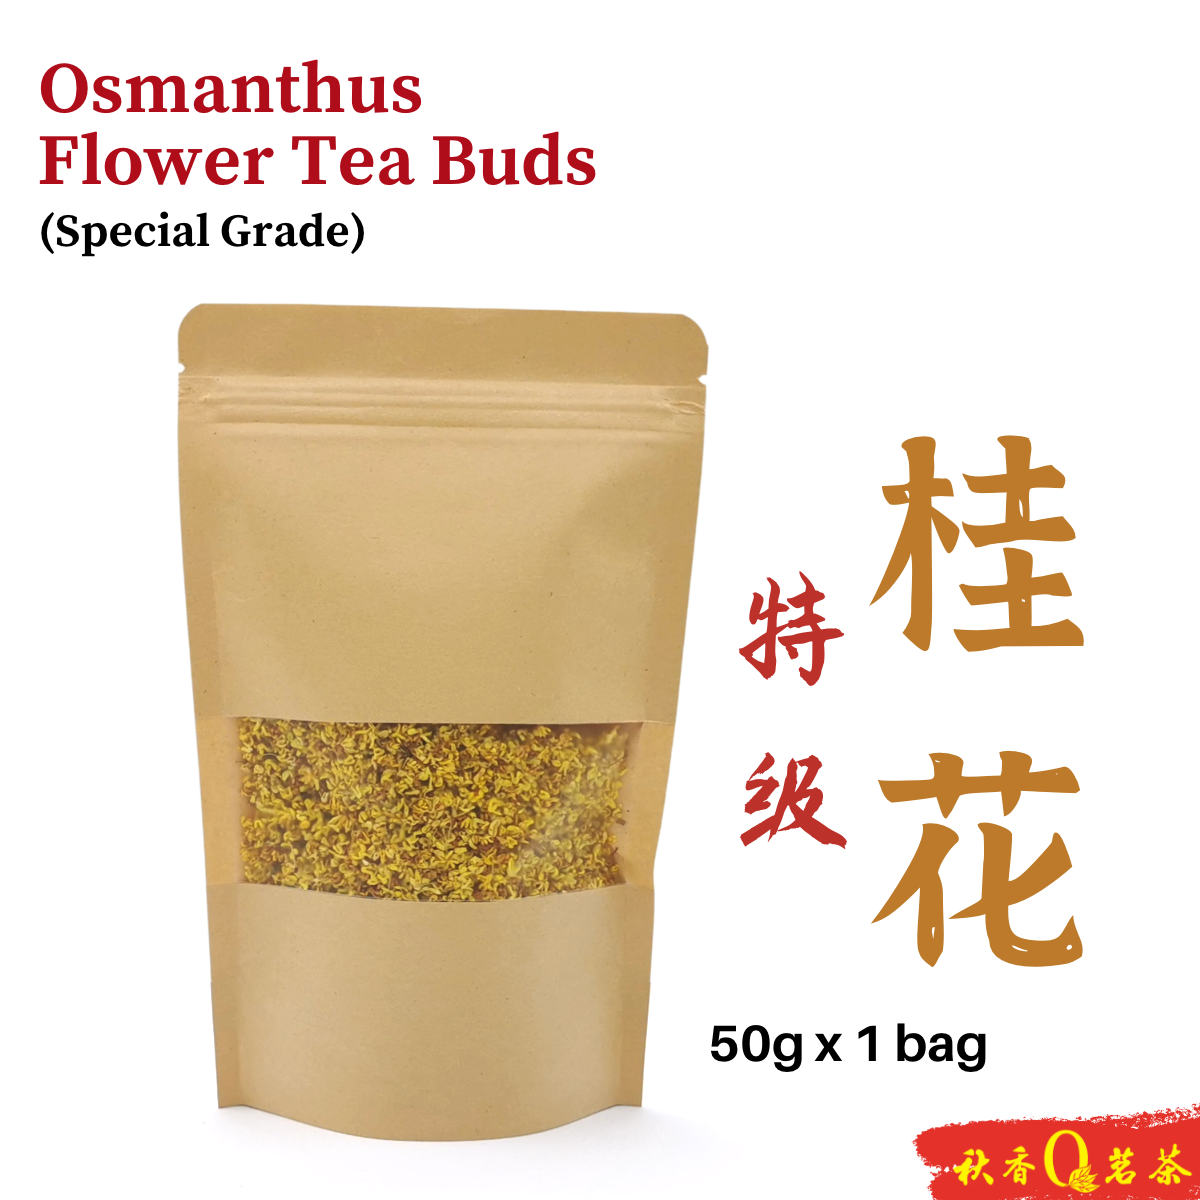 特级桂花 Osmanthus flower tea Buds (Special Grade) 【50g】|【花草茶 Herbal tea】